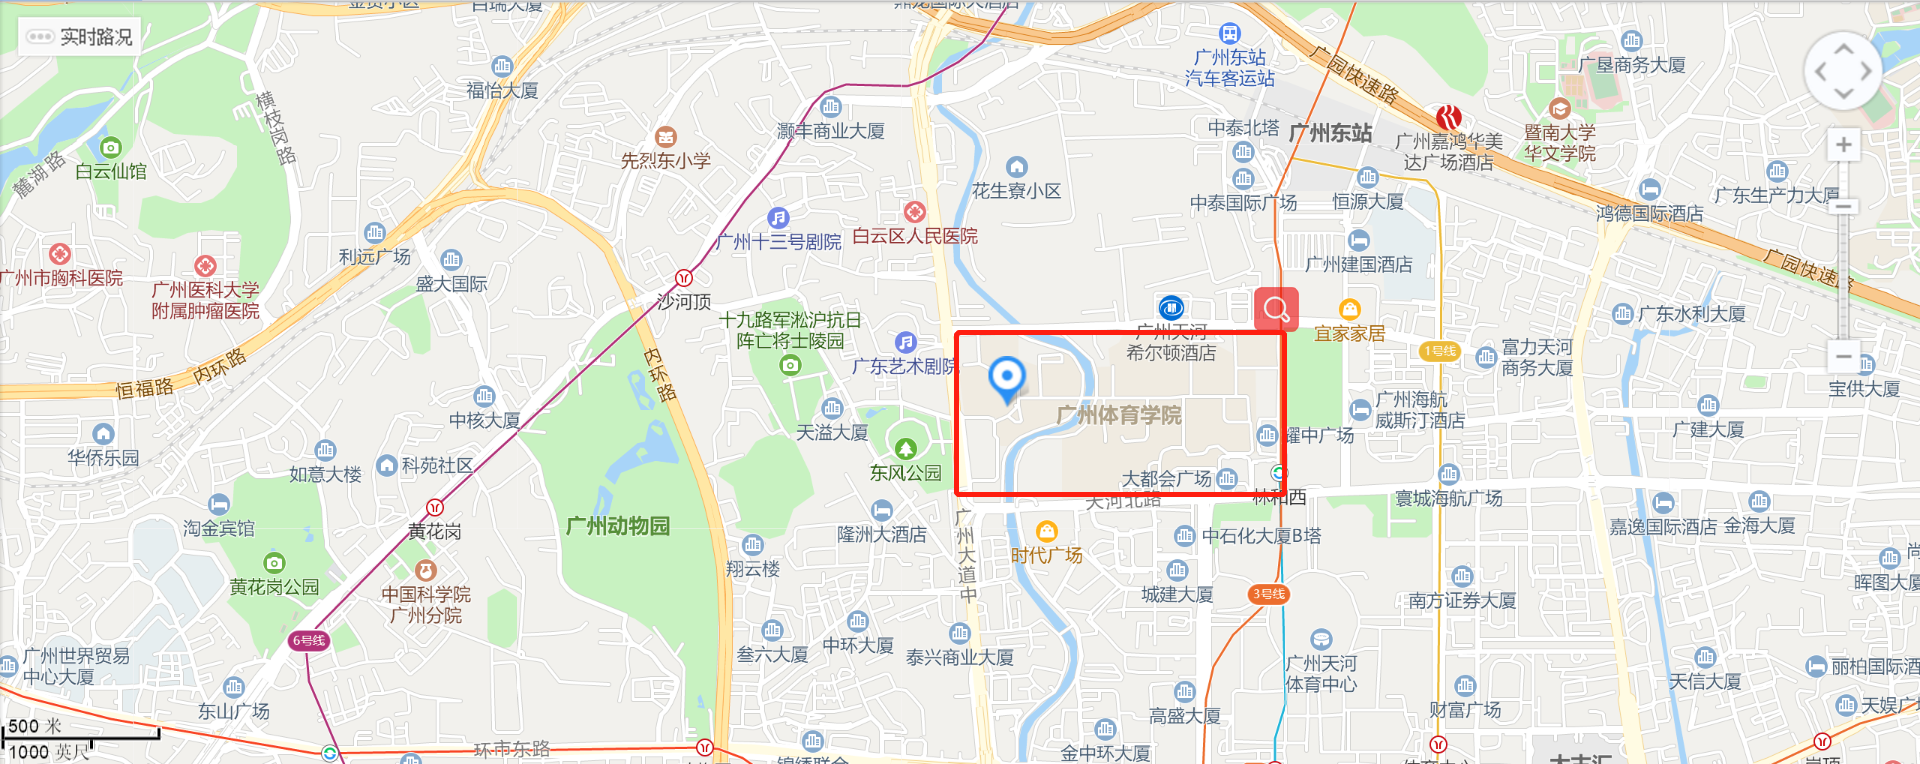 2019年2月2日广州SSAT考点变更